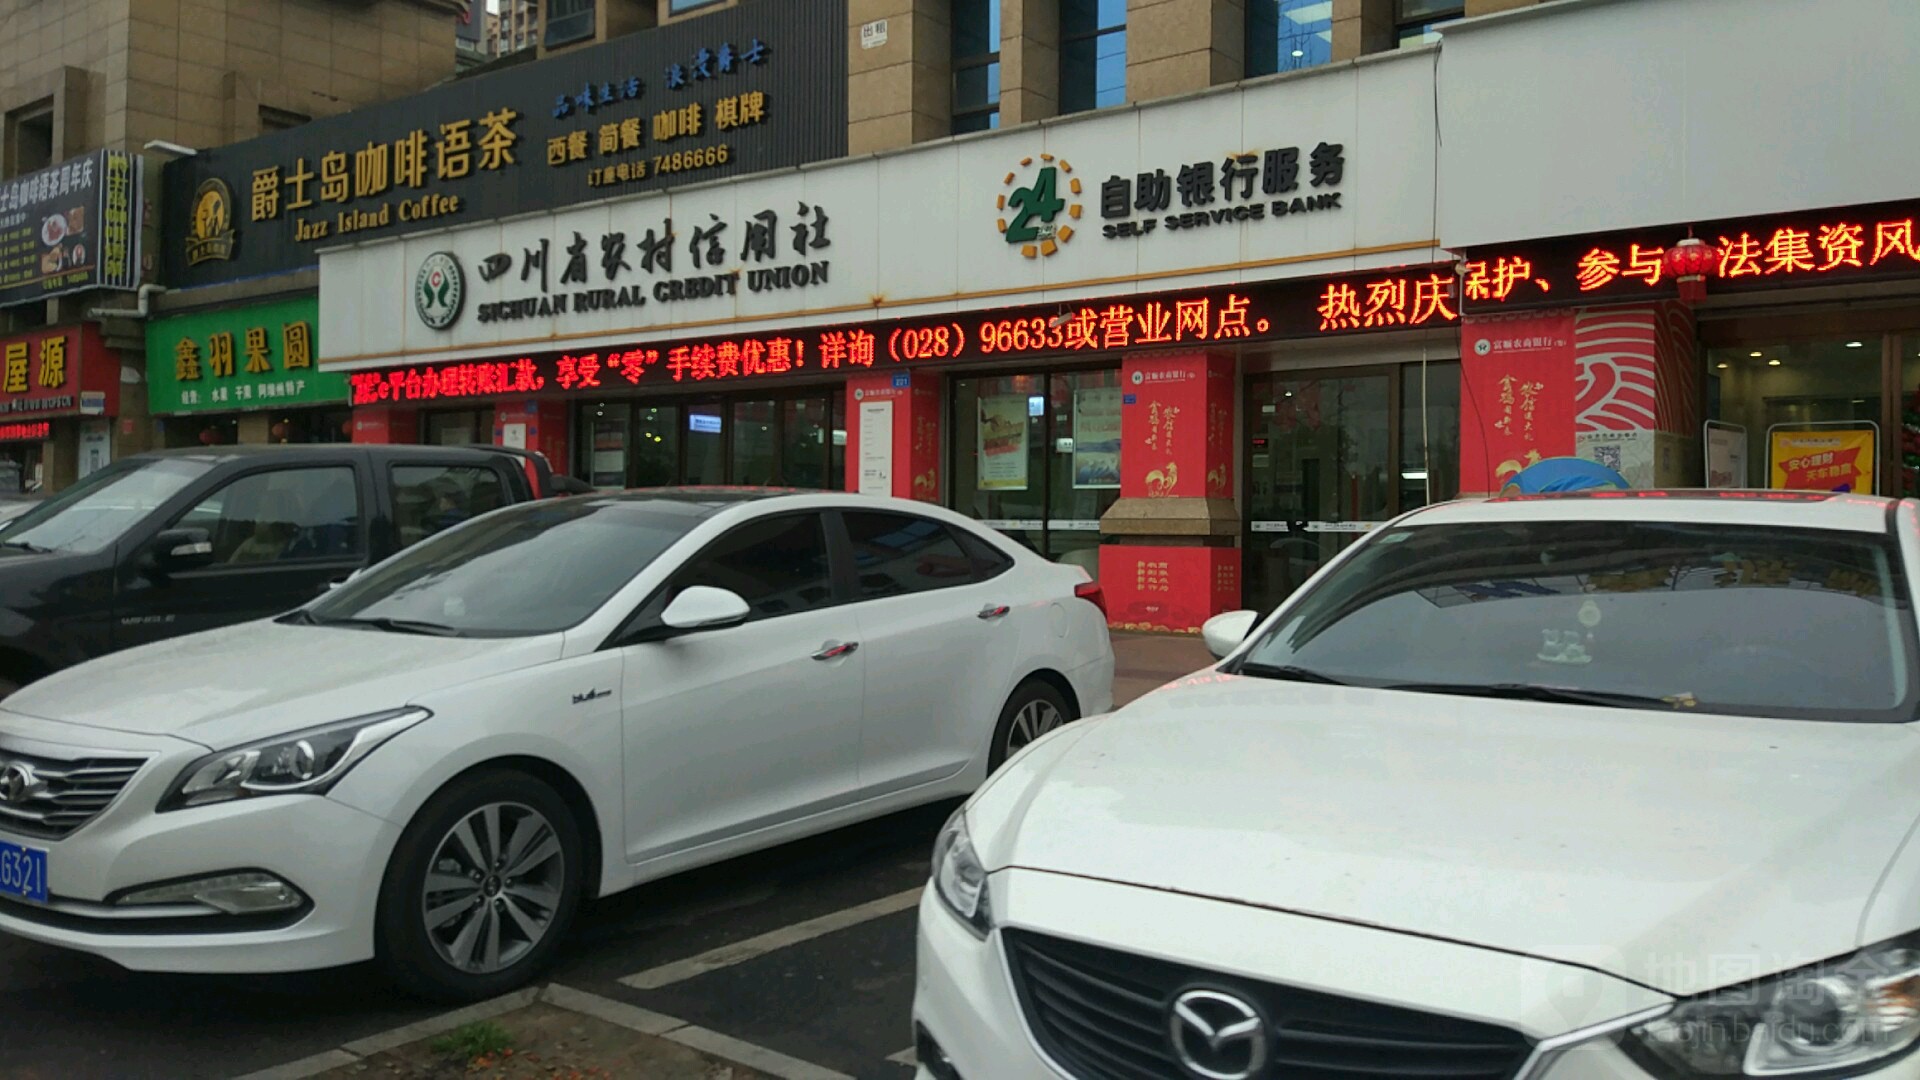 四川省农村信用社ATM